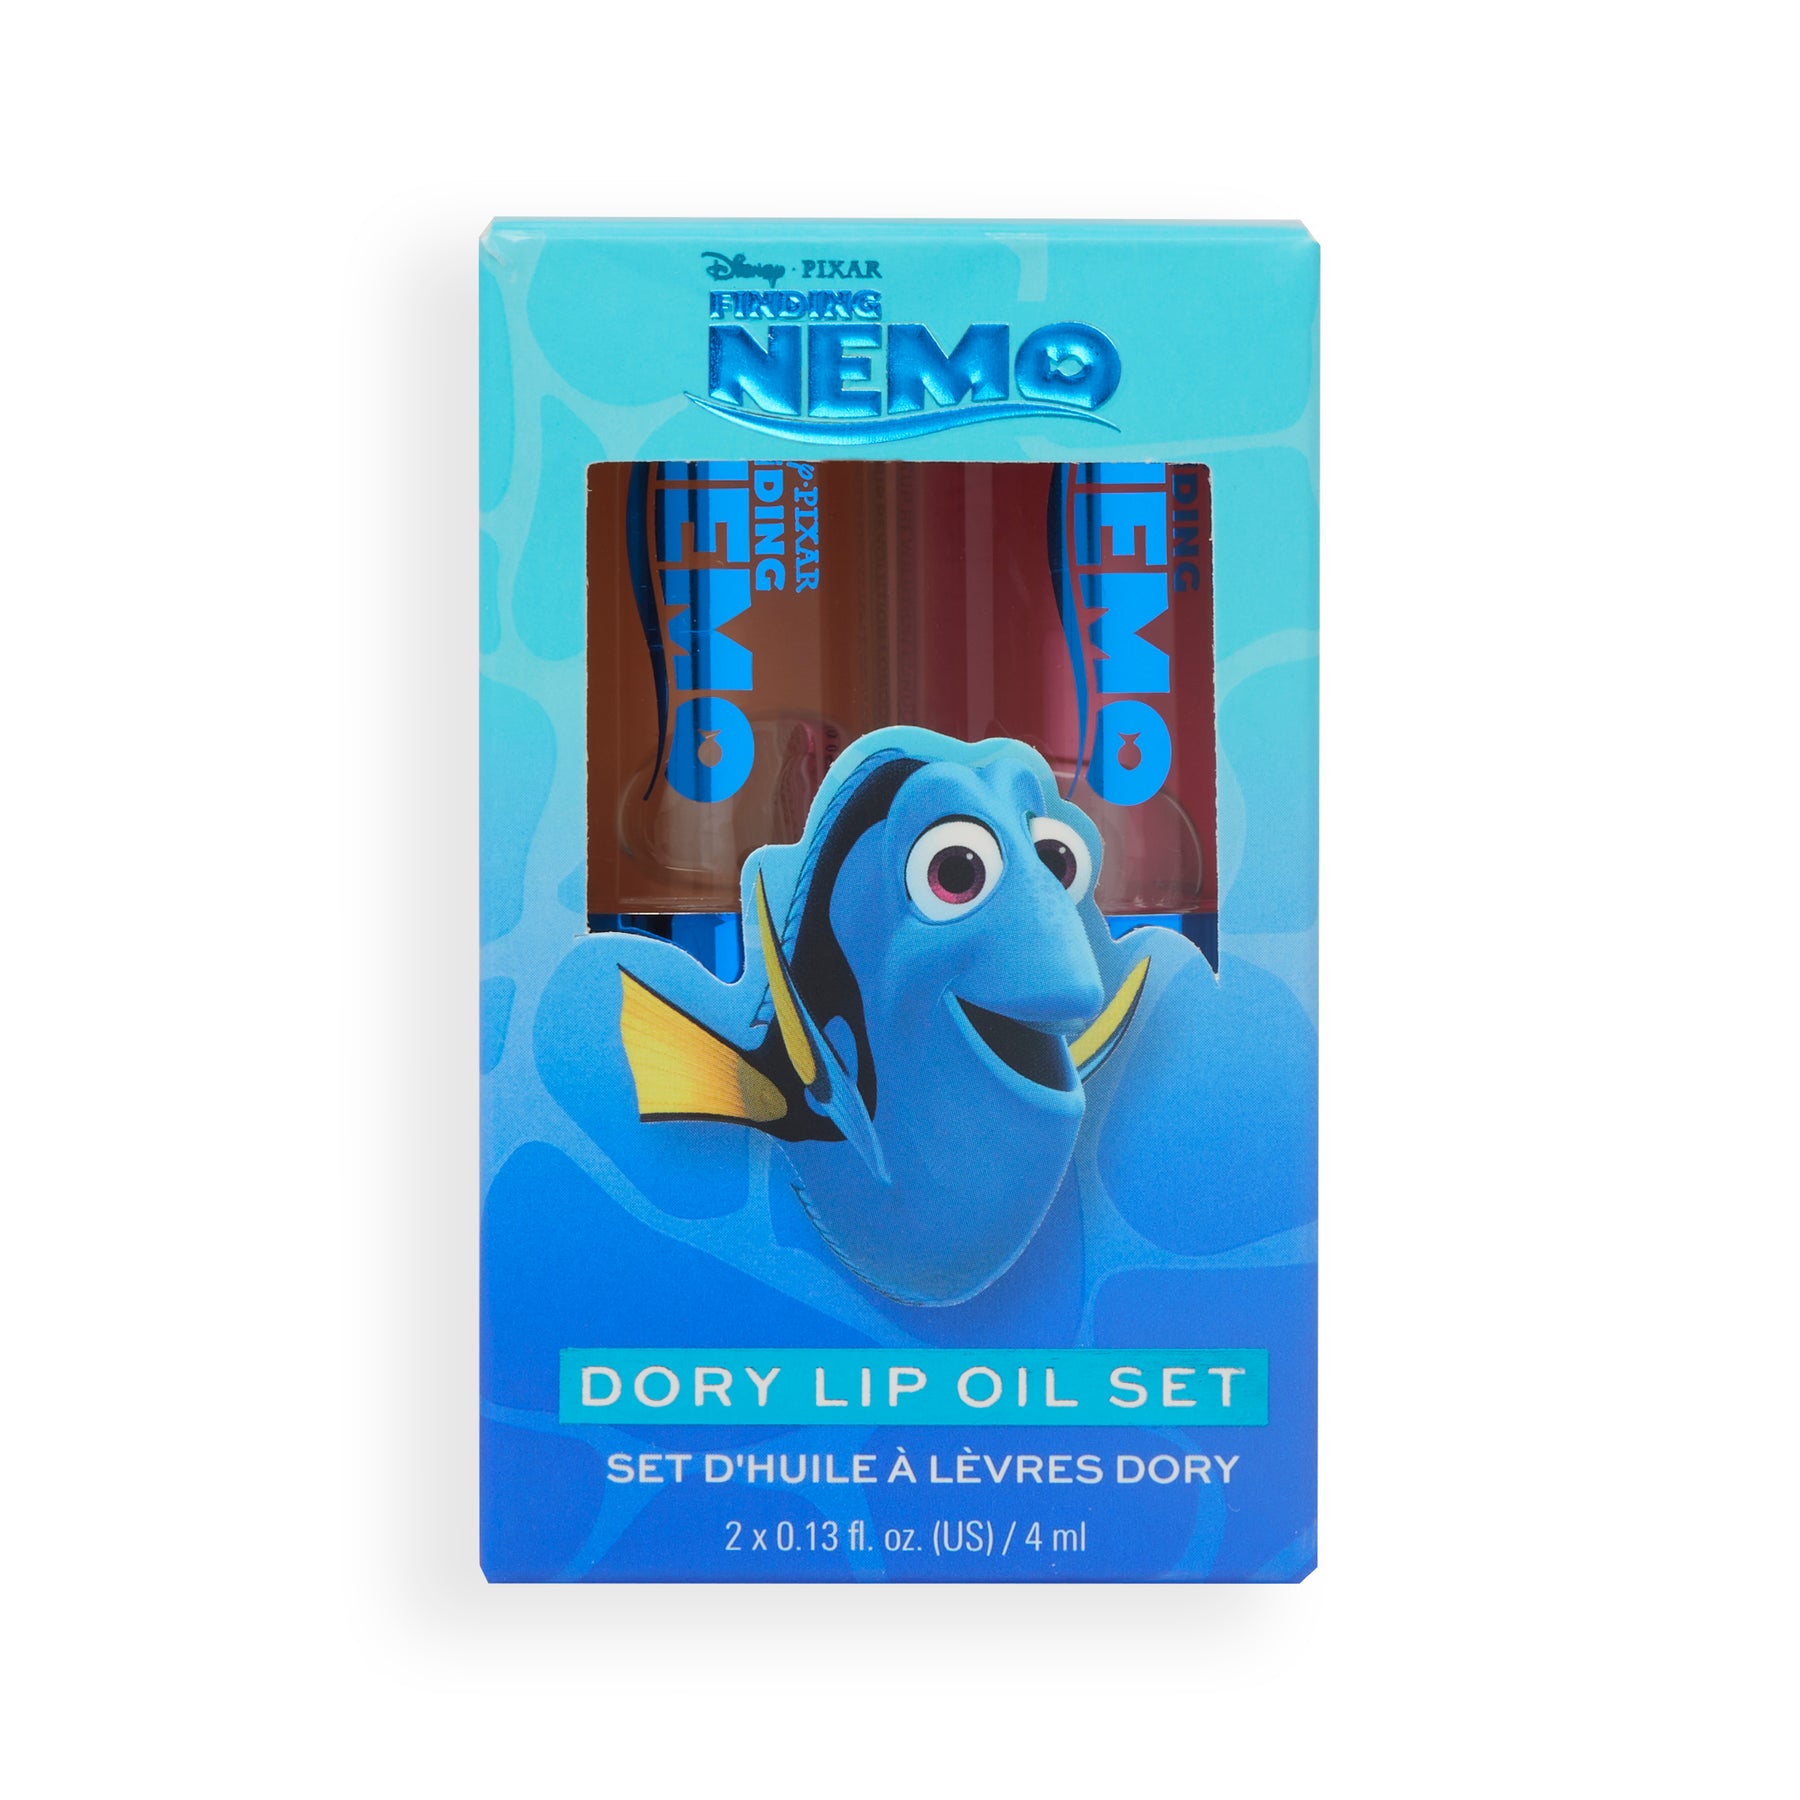 Disney & Pixar’s Finding Nemo and Revolution Dory-inspired Lip Oil Set OUTLET